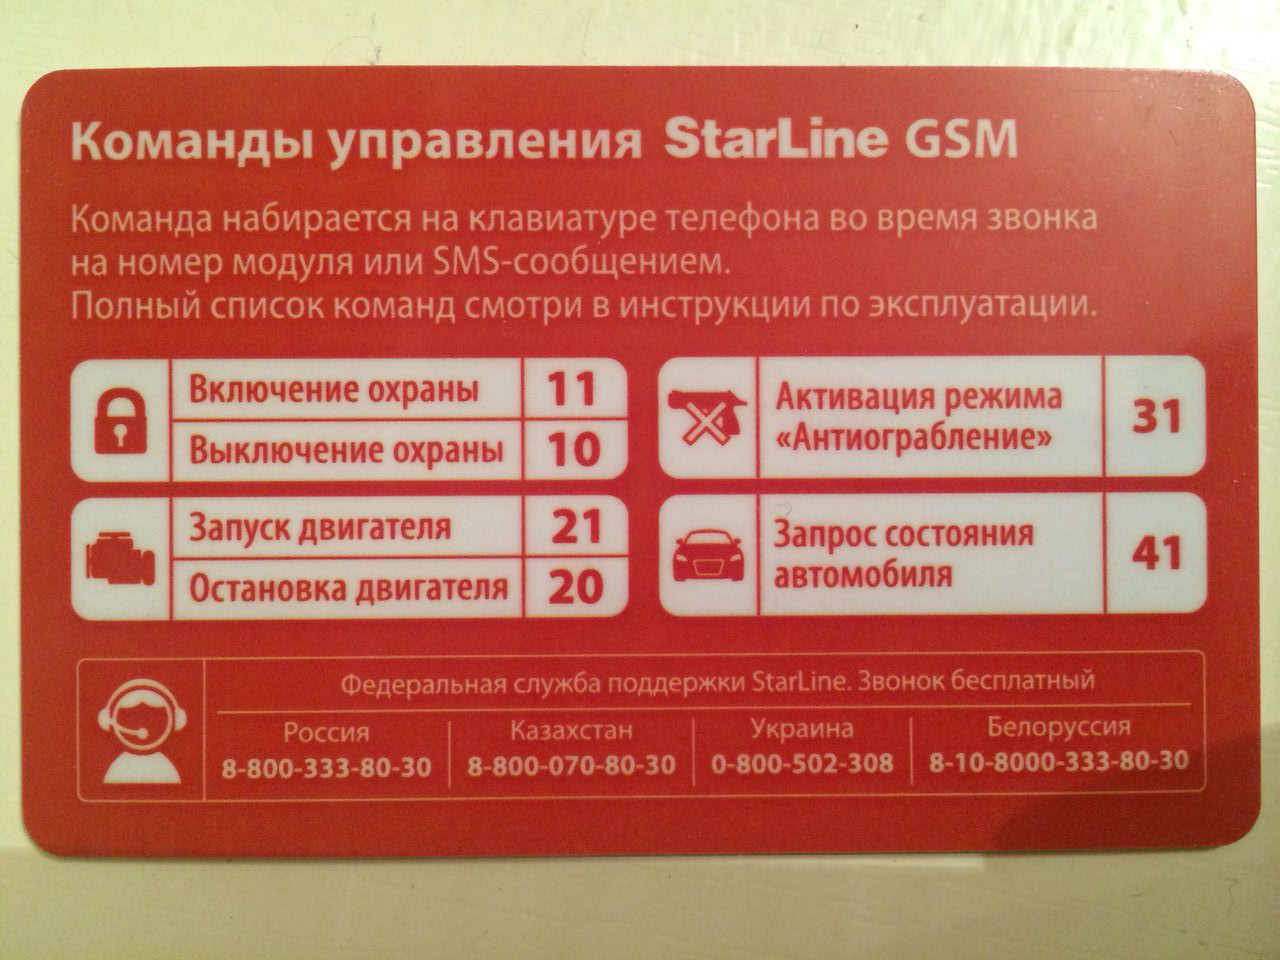 Старлайн команды с телефона. Старлайн а93 GSM модуль. Коды команд старлайн GSM а93. SMS команды STARLINE a93. Komandi upravleniya STARLINE GSM а93.